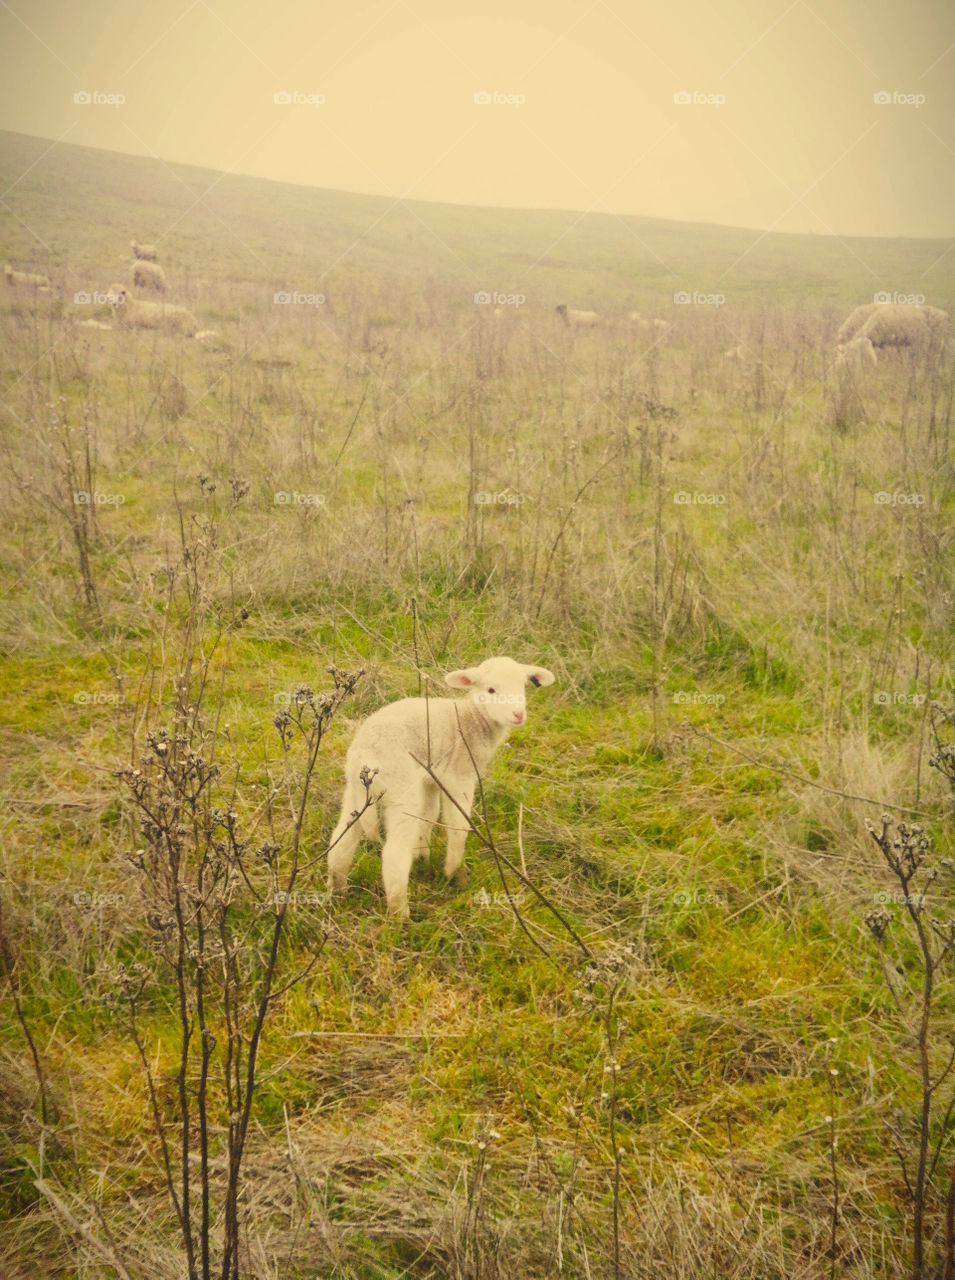 A lone lamb in a field.